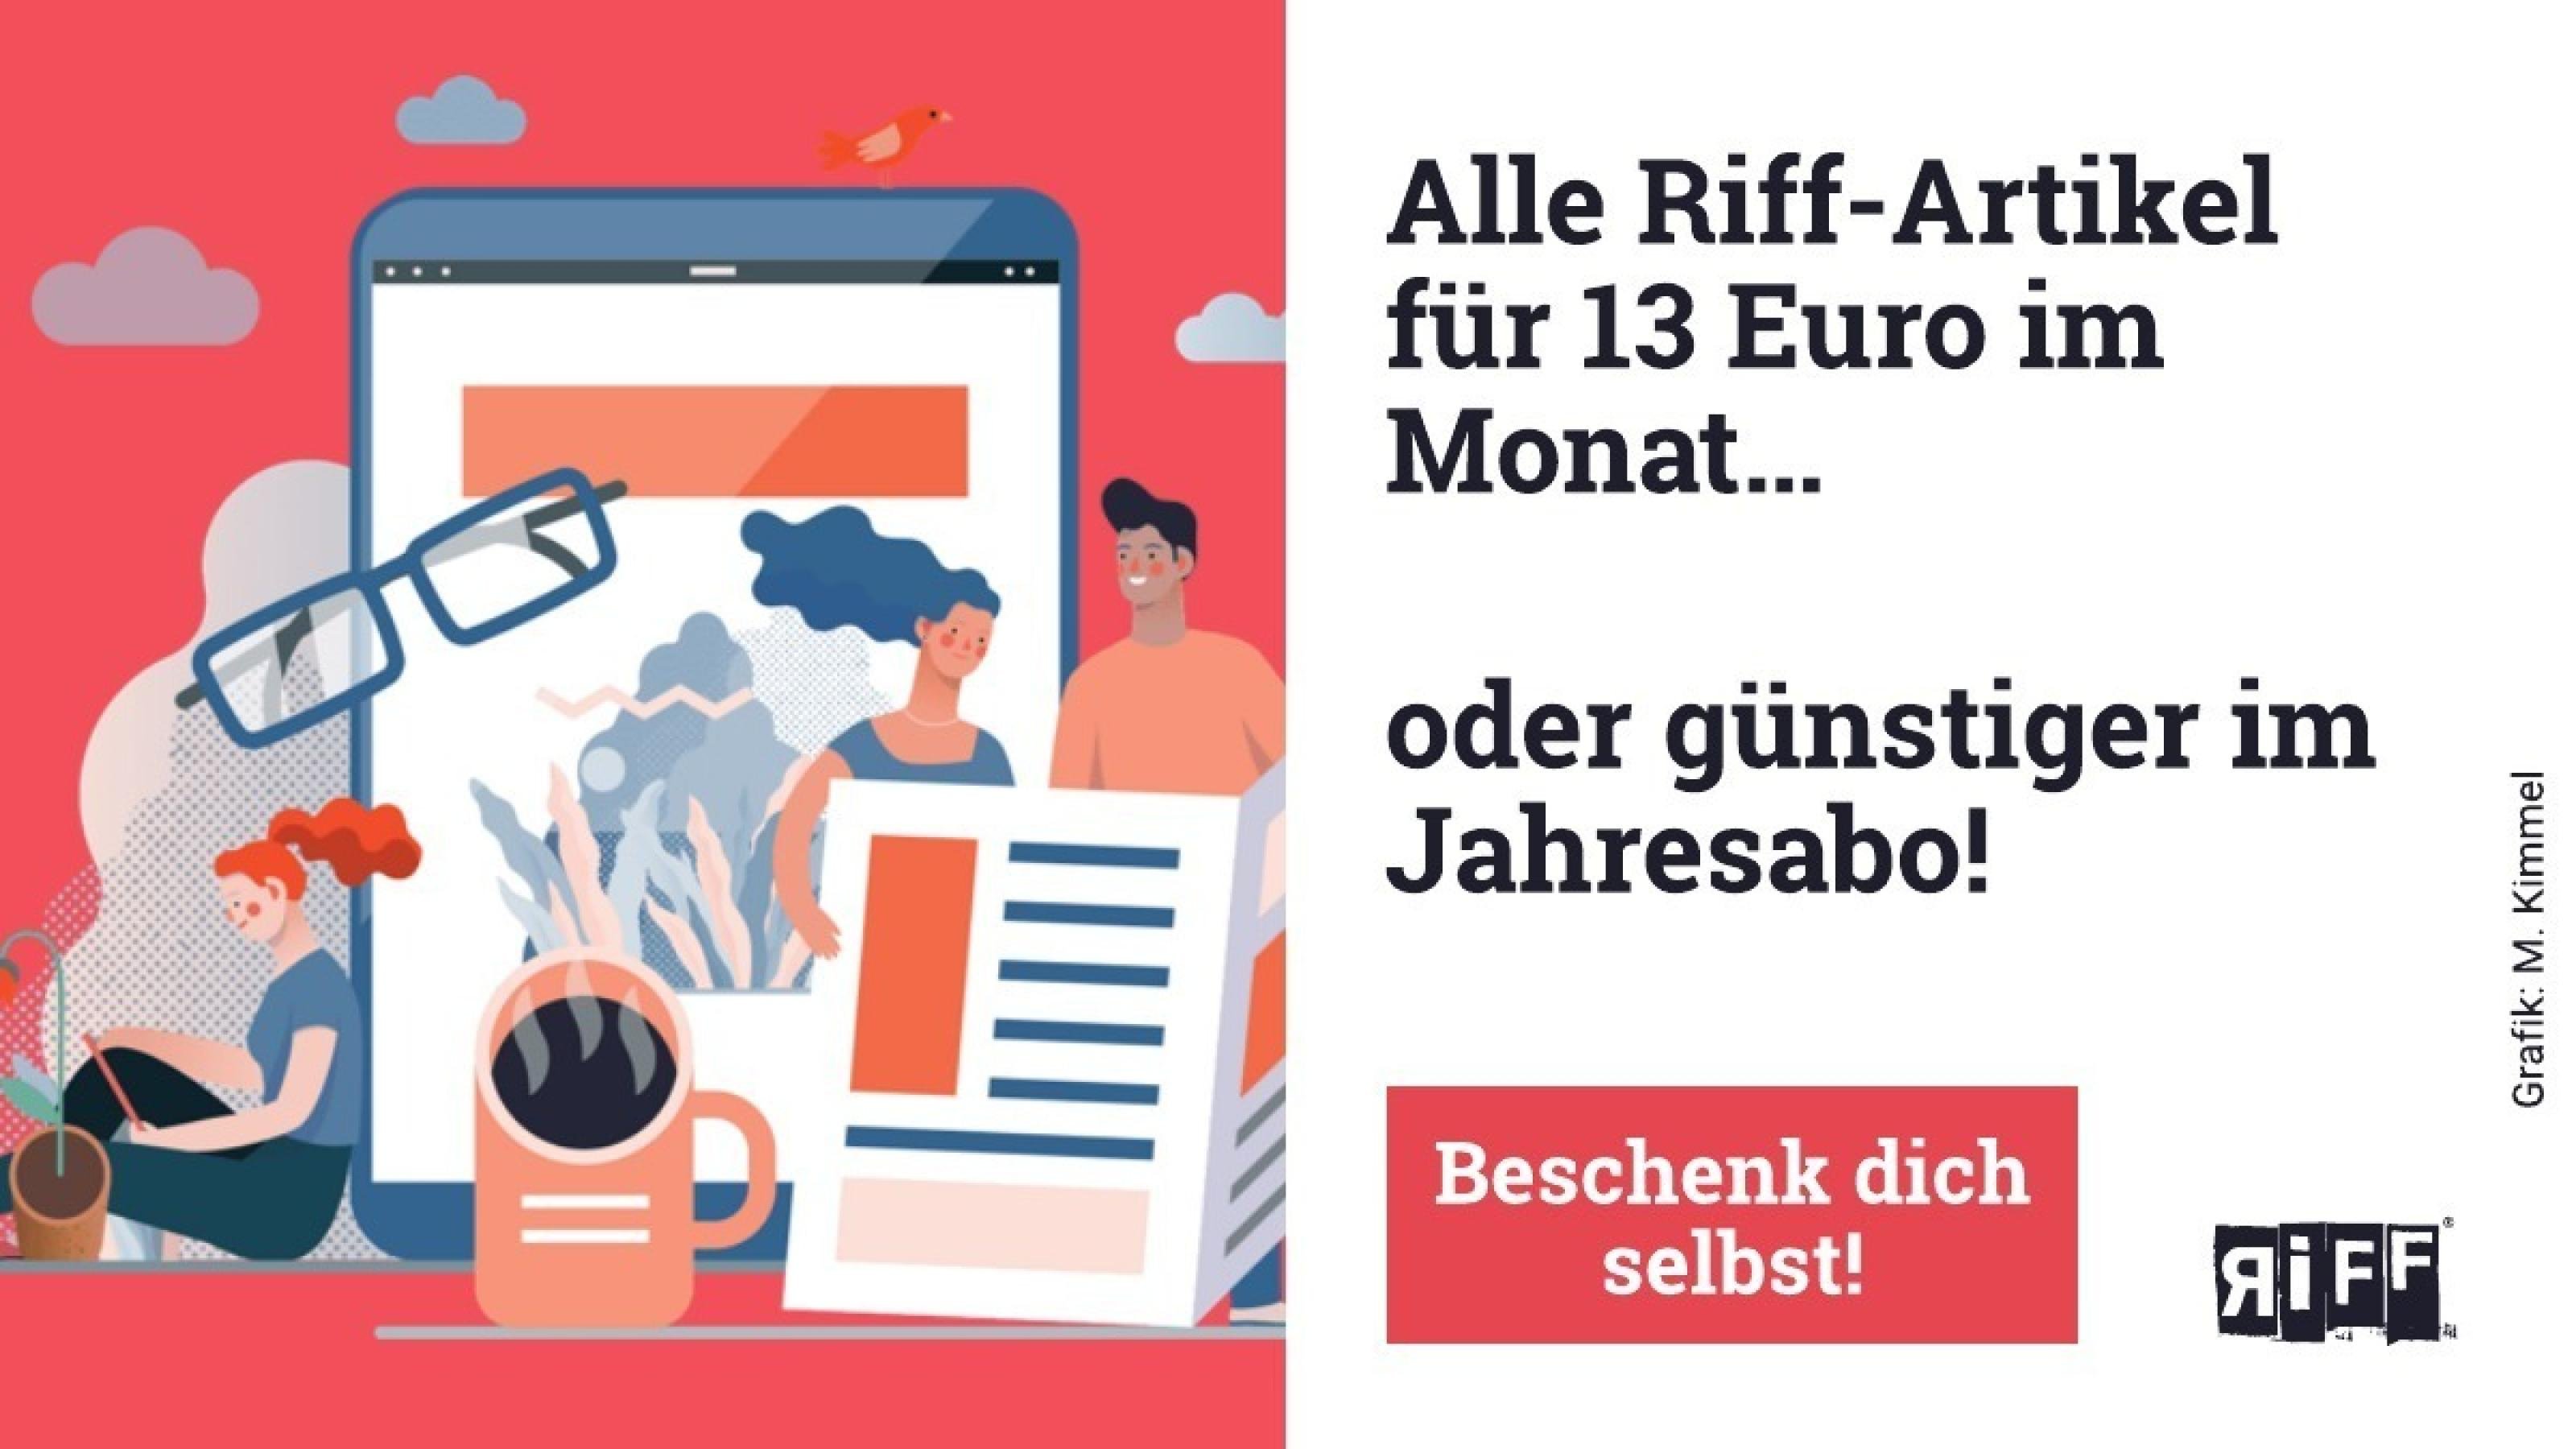 Auf der Werbekachel ist zu lesen: Alle Riff-Artikel für 13 Euro im Monat – beschenk Dich selbst!